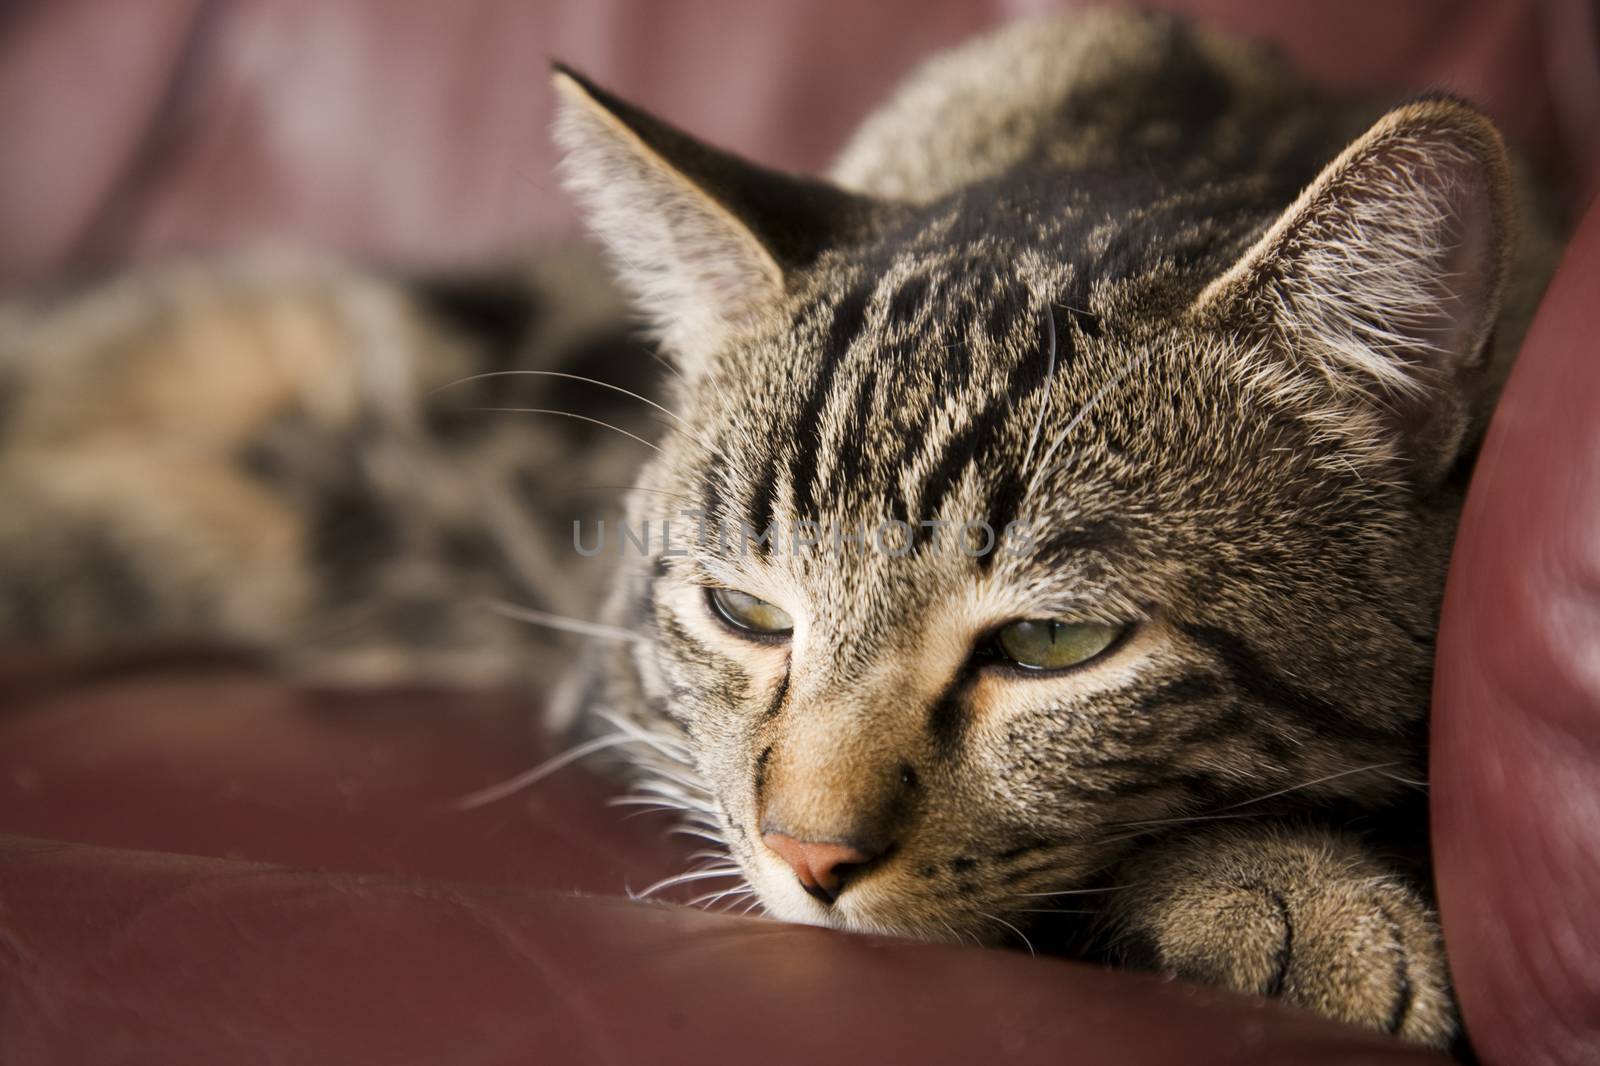 A lazy, tabby cat half asleep on a burgundy leather chair.  Shallow DOF.